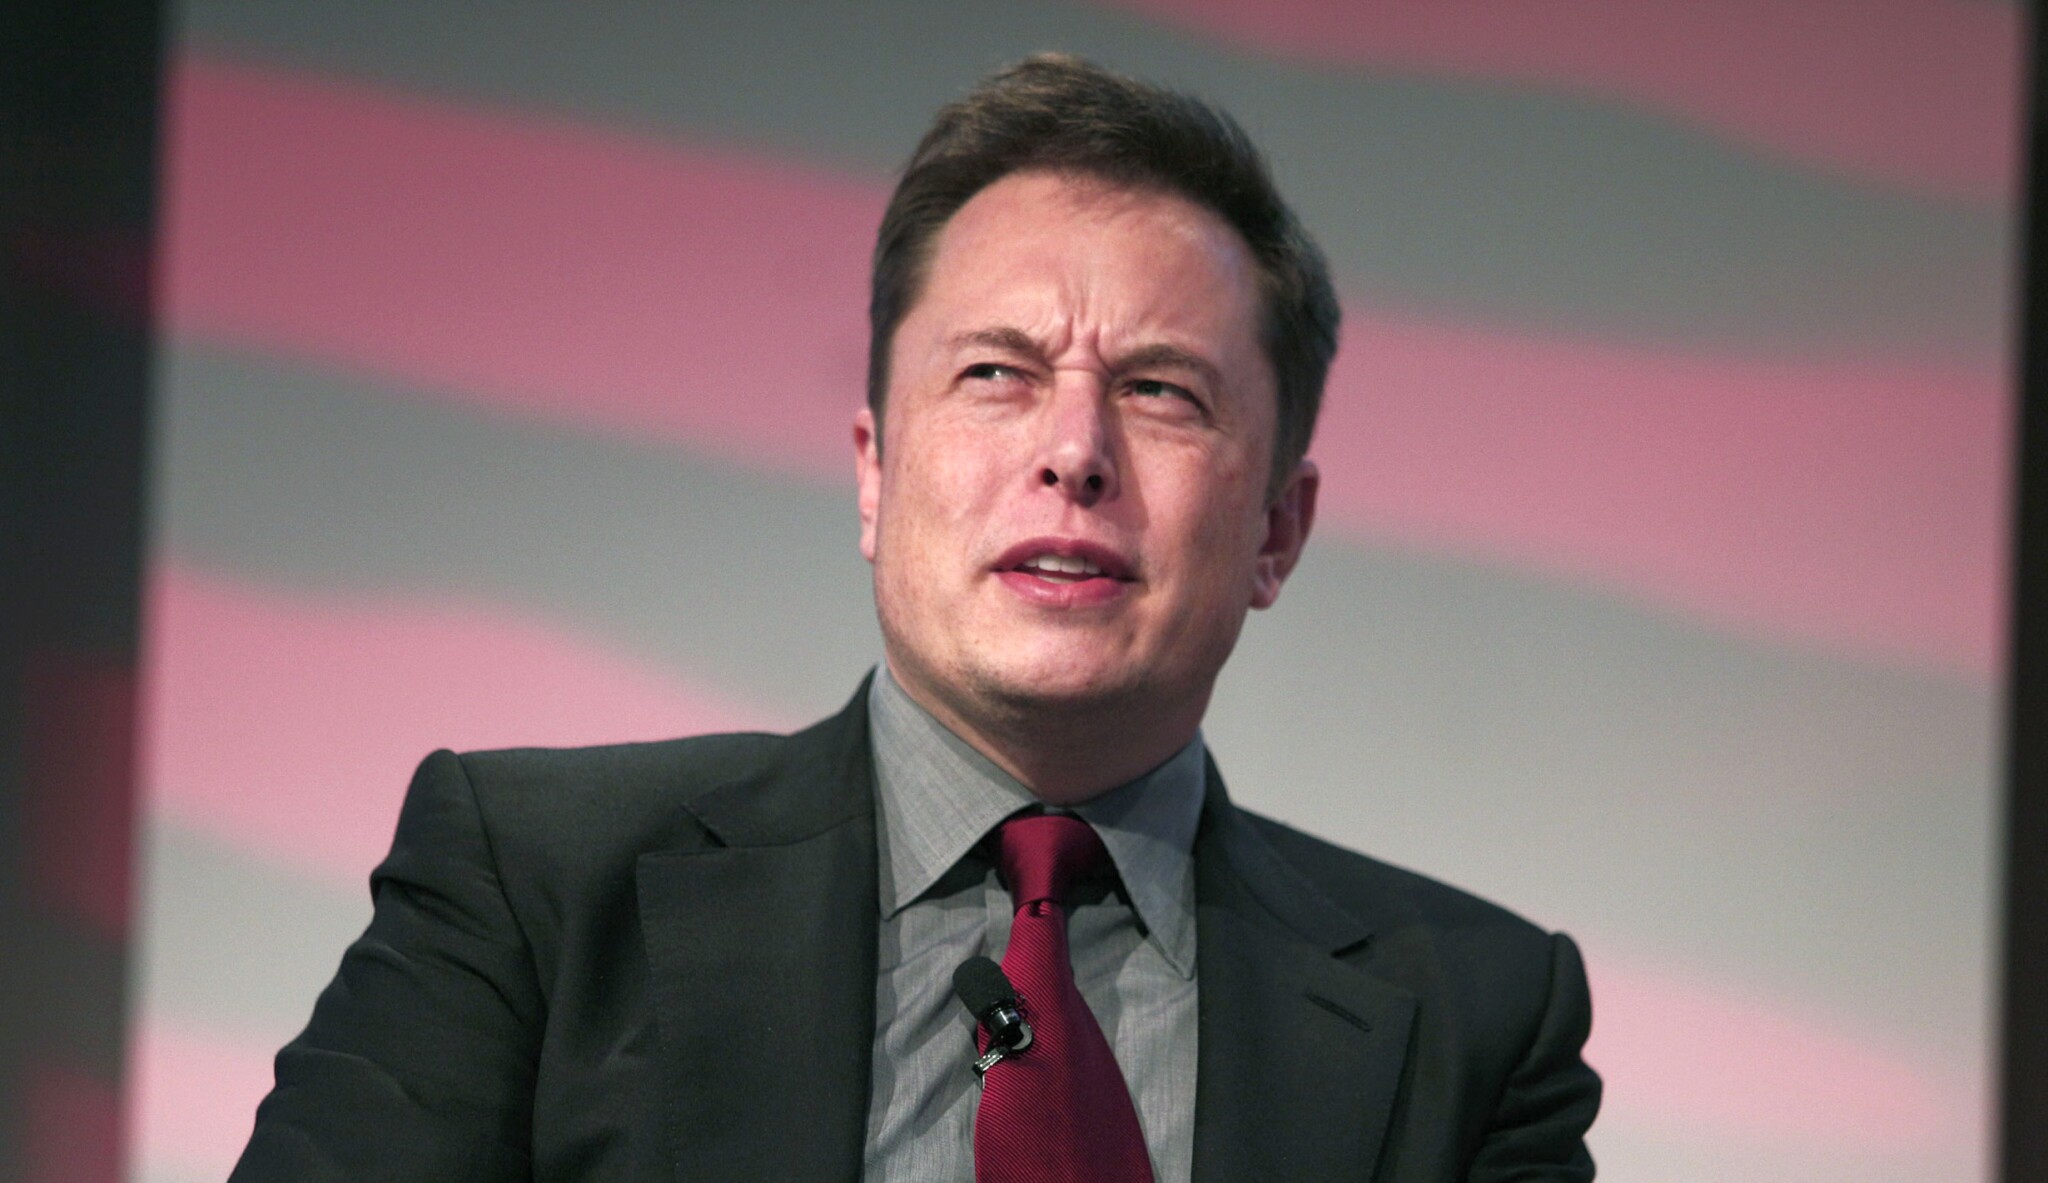 Tesla by se mohla pustit do výroby ventilátorů, slíbil Elon Musk. A schytal kritiku